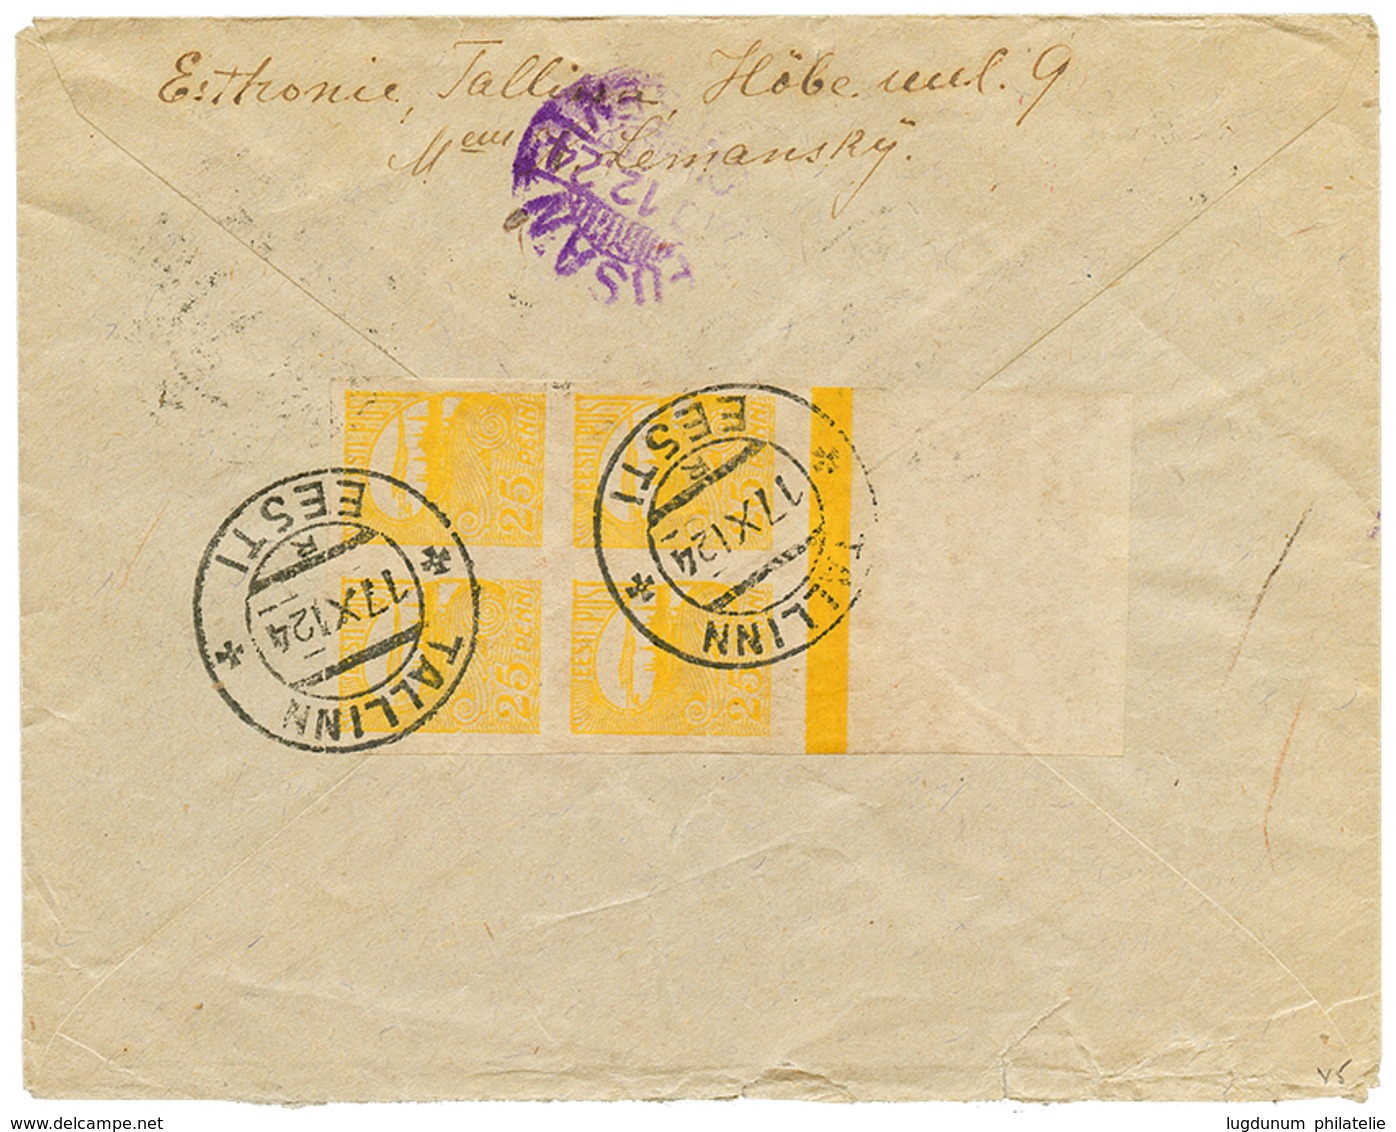 758 ESTONIA To KOREA : 1924 9m + 25p Block Of 4(reverse) Canc. TALLINN EESTI On Taxed Envelope To KINSEN KOREA. Extremel - Crète